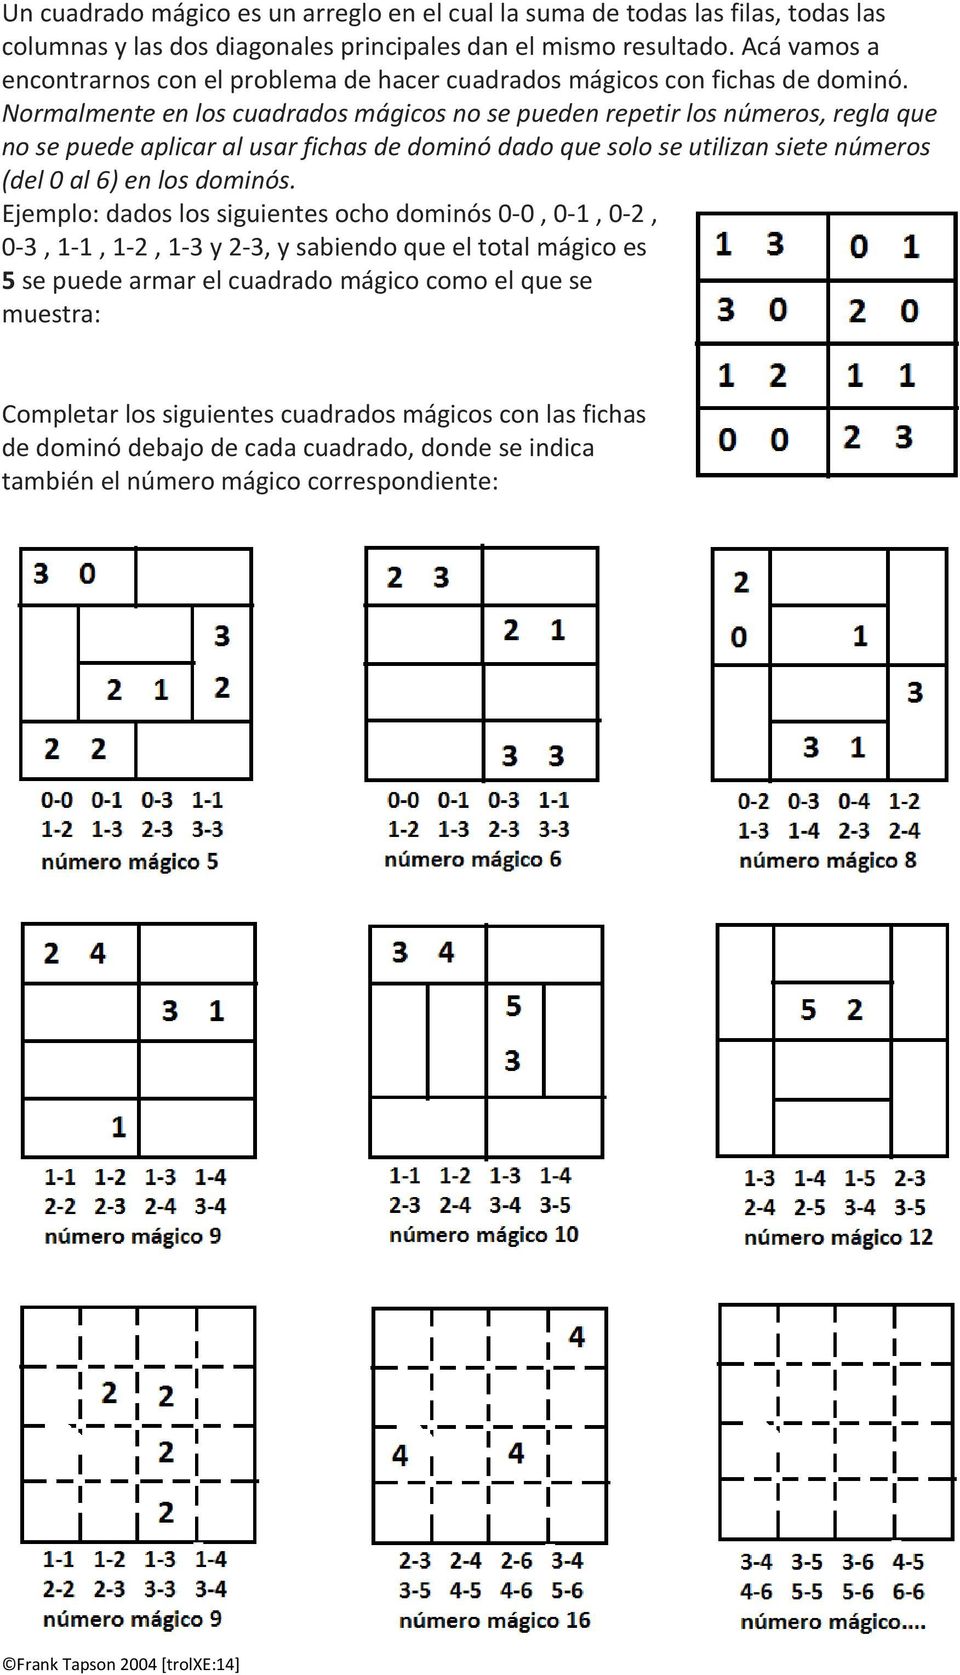 Normalmente en los cuadrados mágicos no se pueden repetir los números, regla que no se puede aplicar al usar fichas de dominó dado que solo se utilizan siete números (del 0 al 6) en los